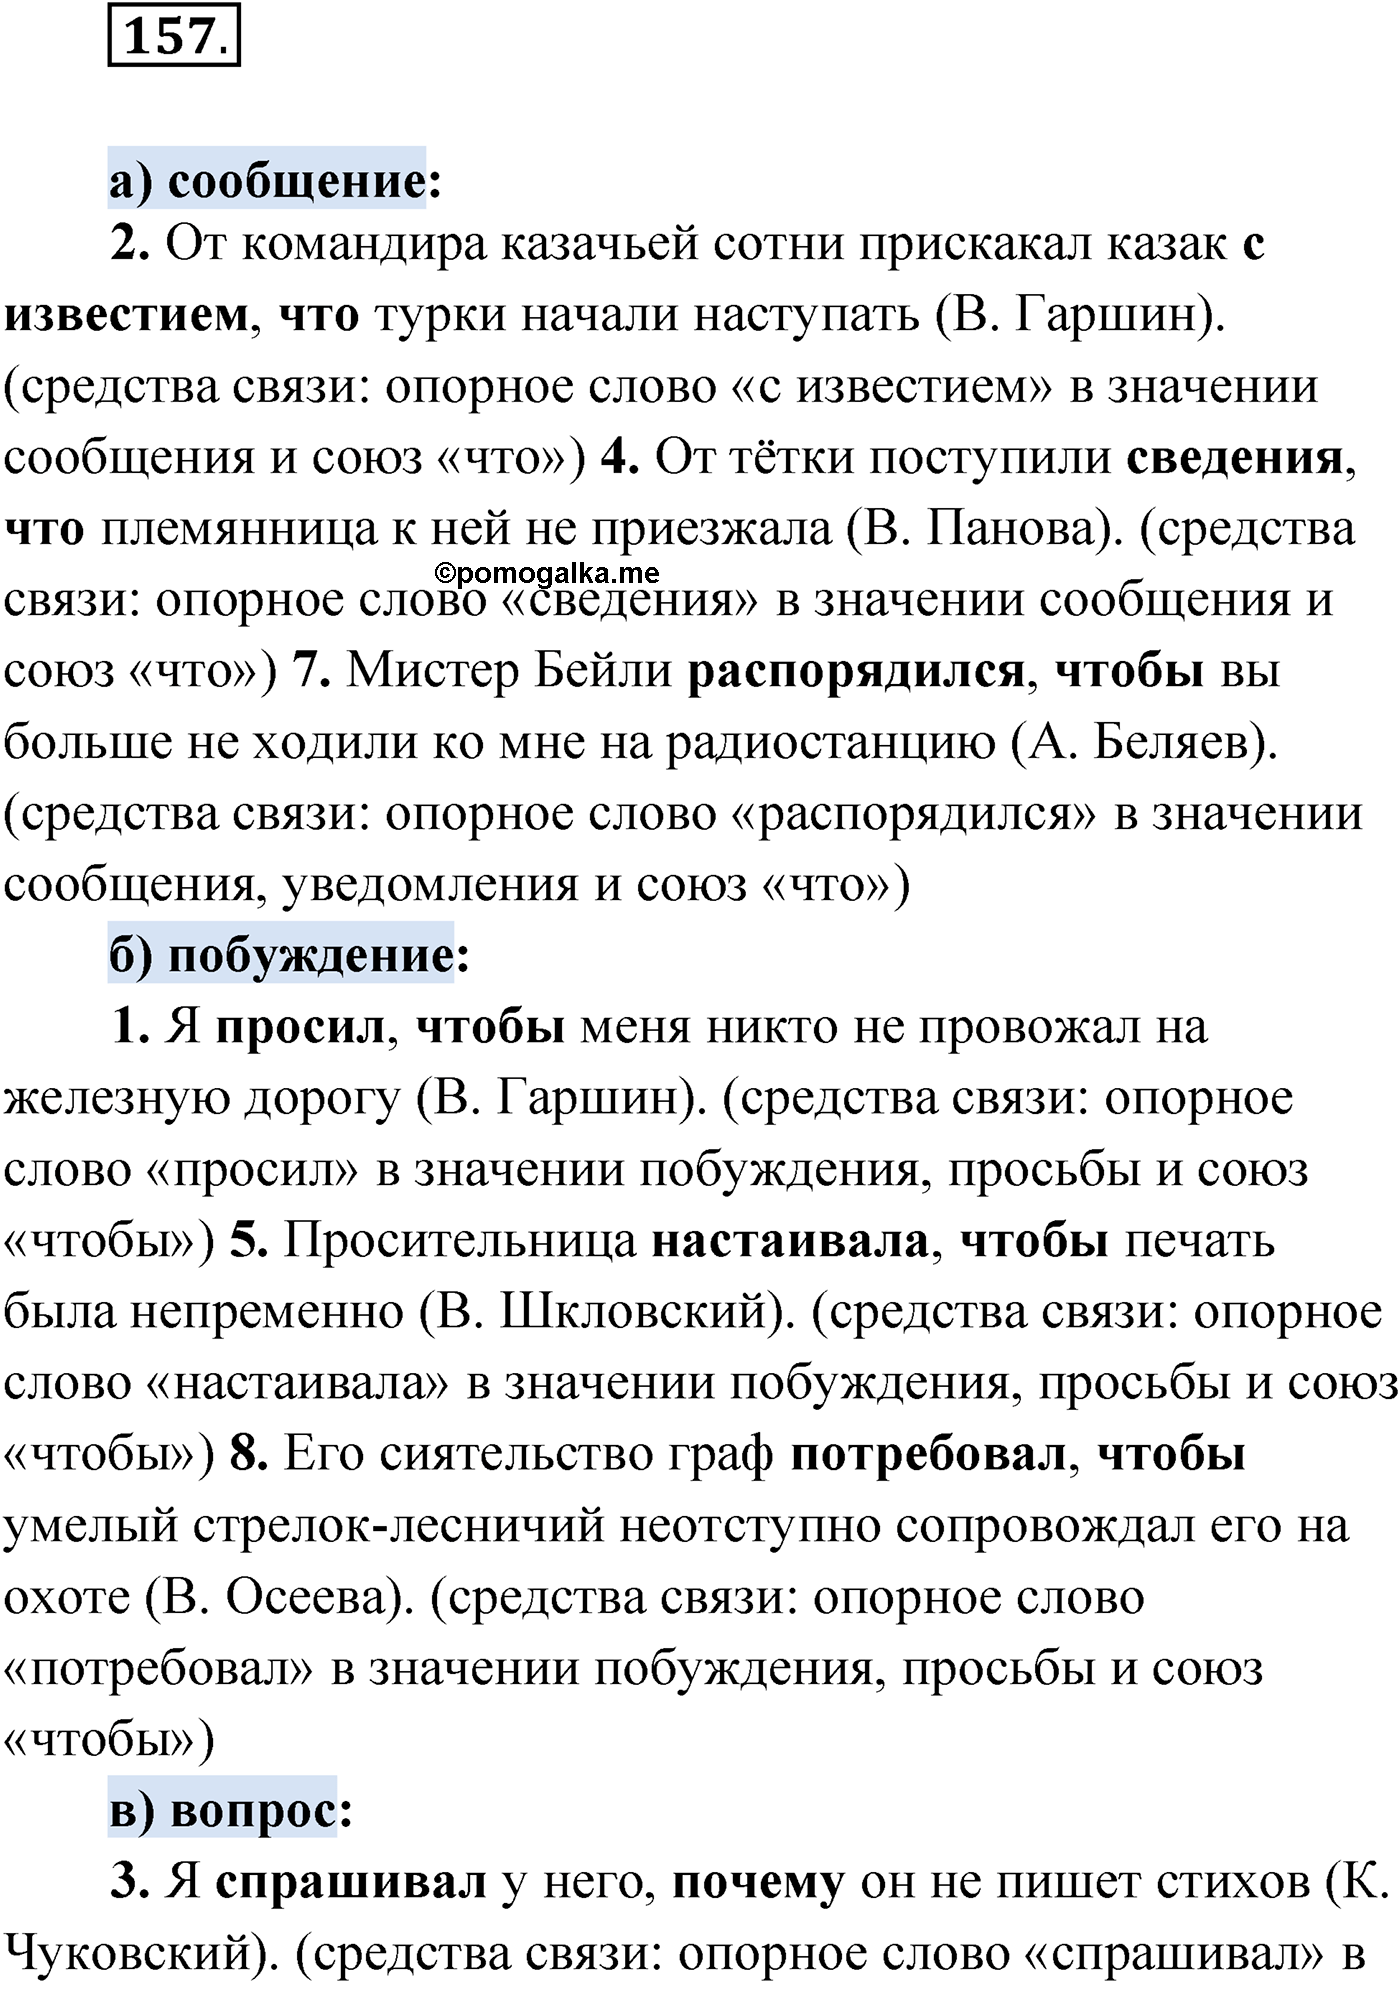 упражнение №157 русский язык 9 класс Мурина 2019 год